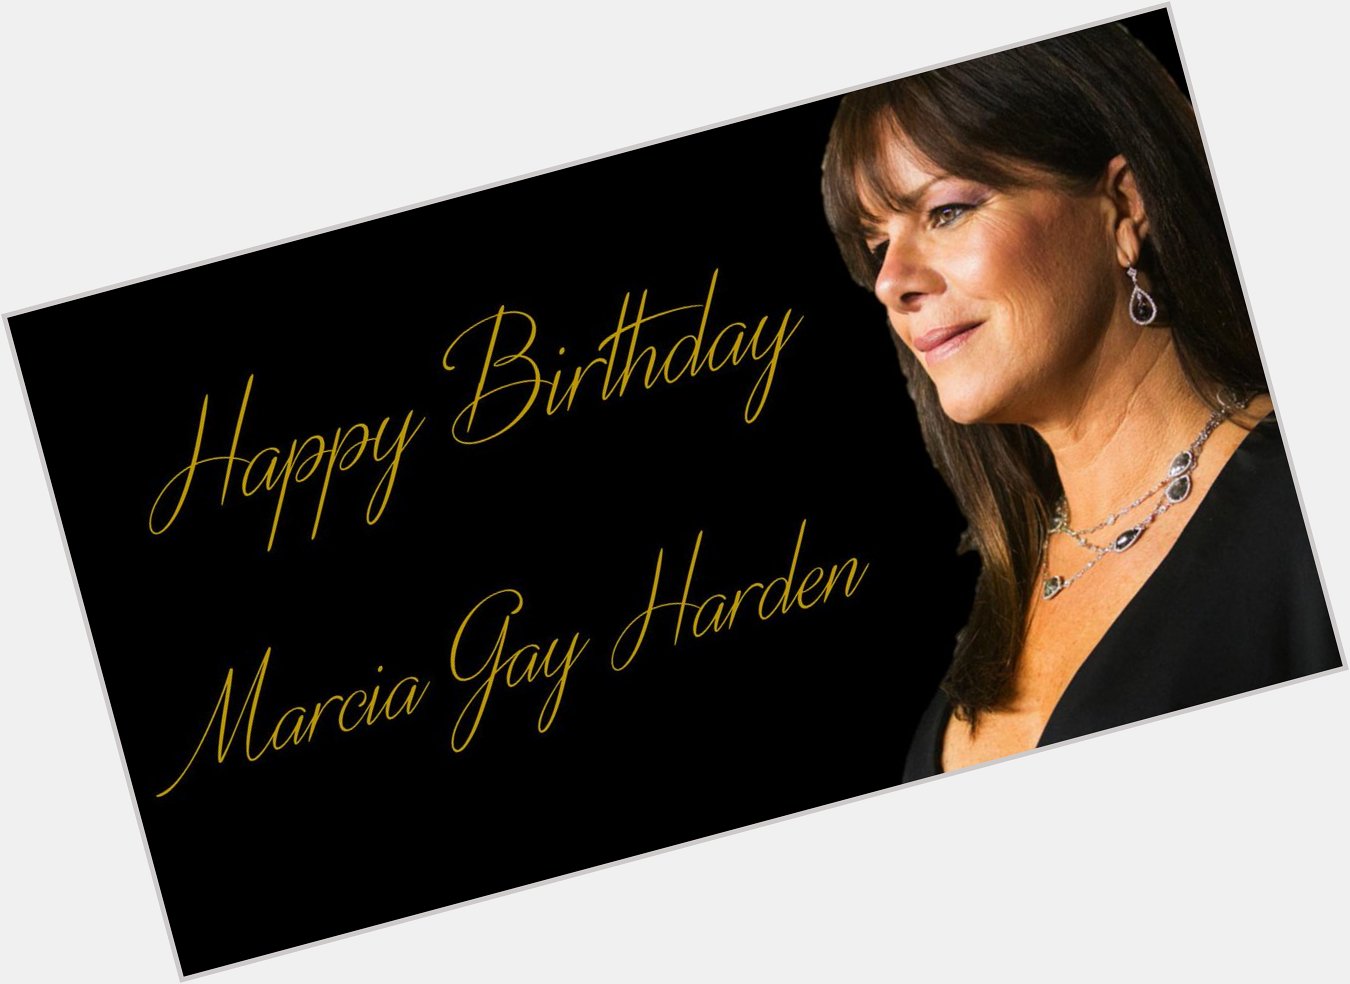 Happy birthday to our beautiful mama Grey, !¡Feliz cumpleaños a nuestra preciosa mamá Grey, Marcia Gay Harden! 